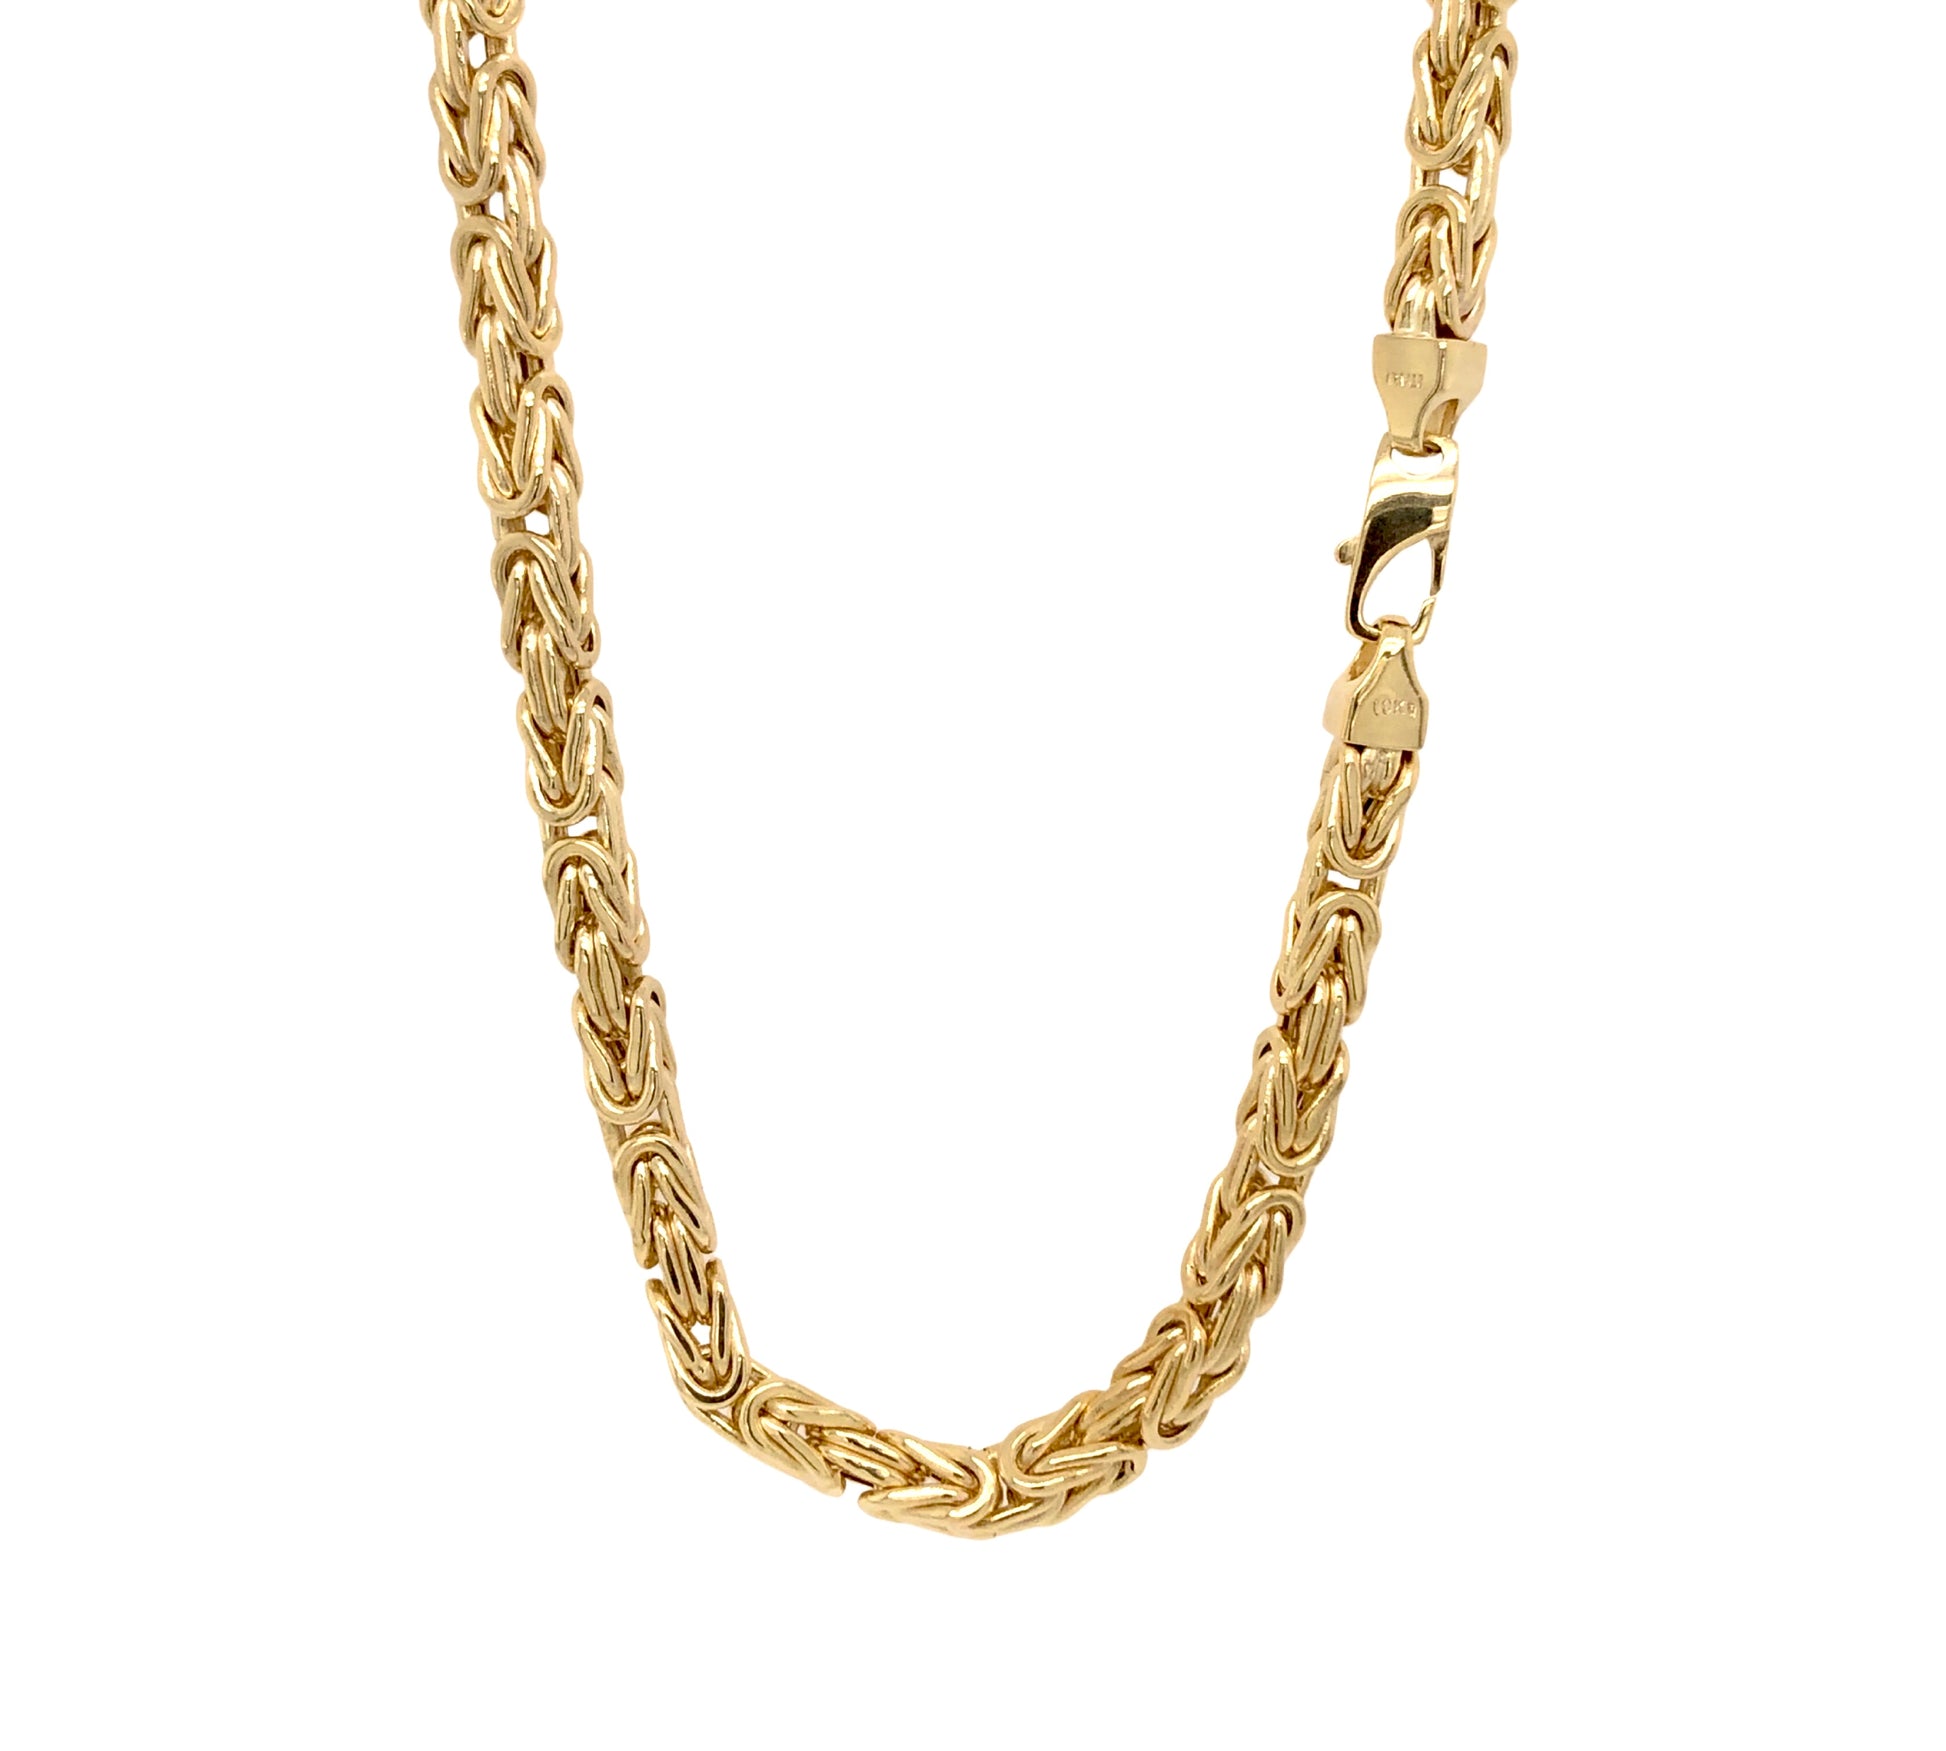  Byzantine Chain - fine jewelry